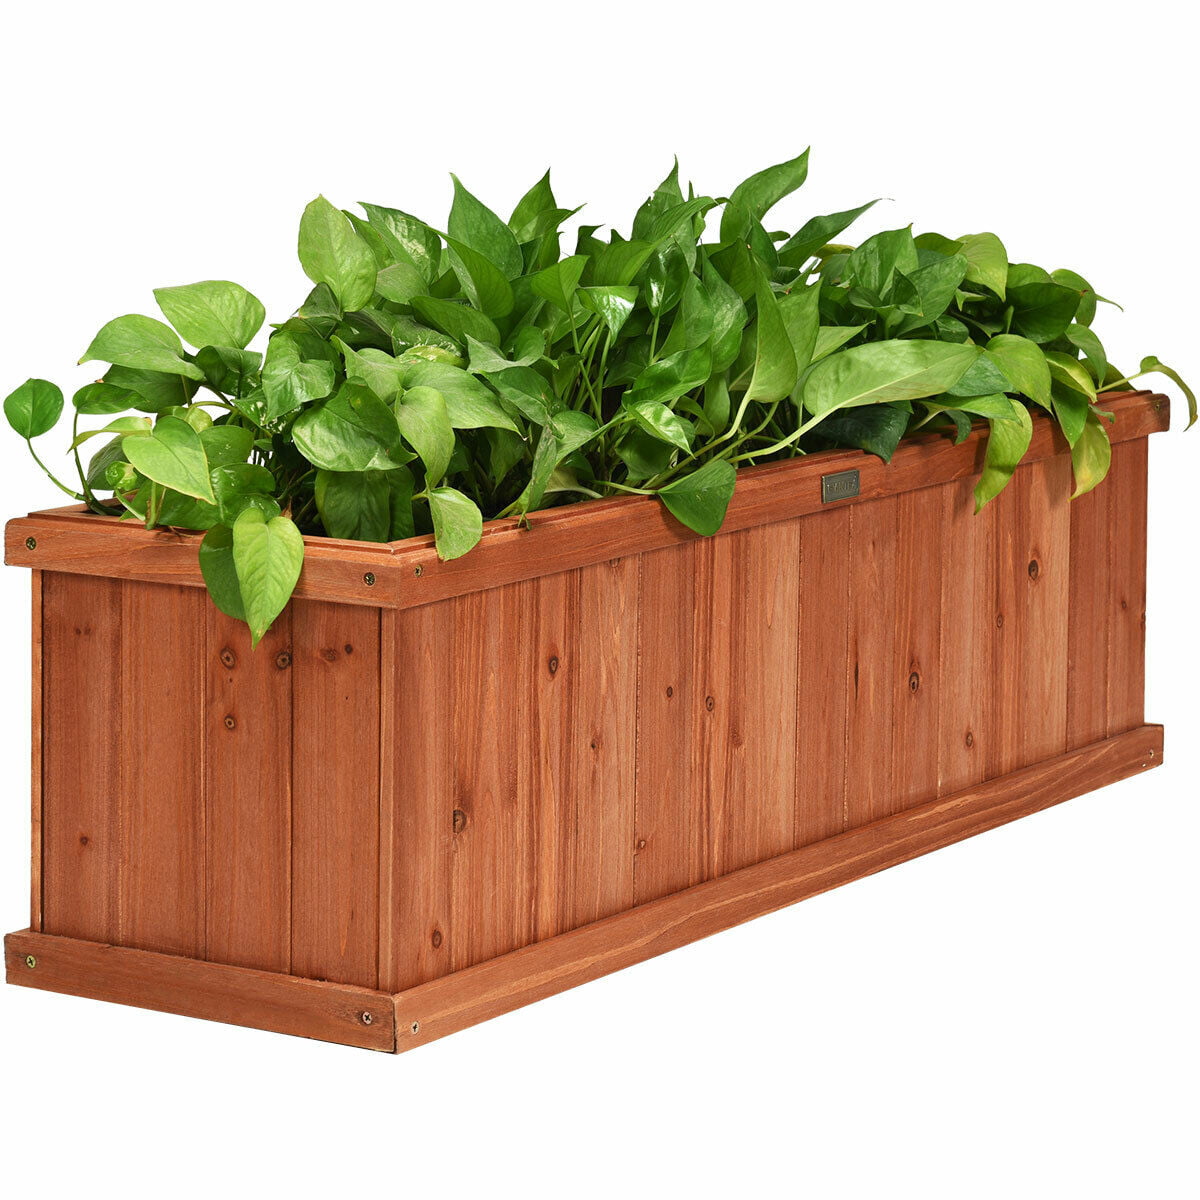 40 inch wooden flower planter raised bed box garden yard